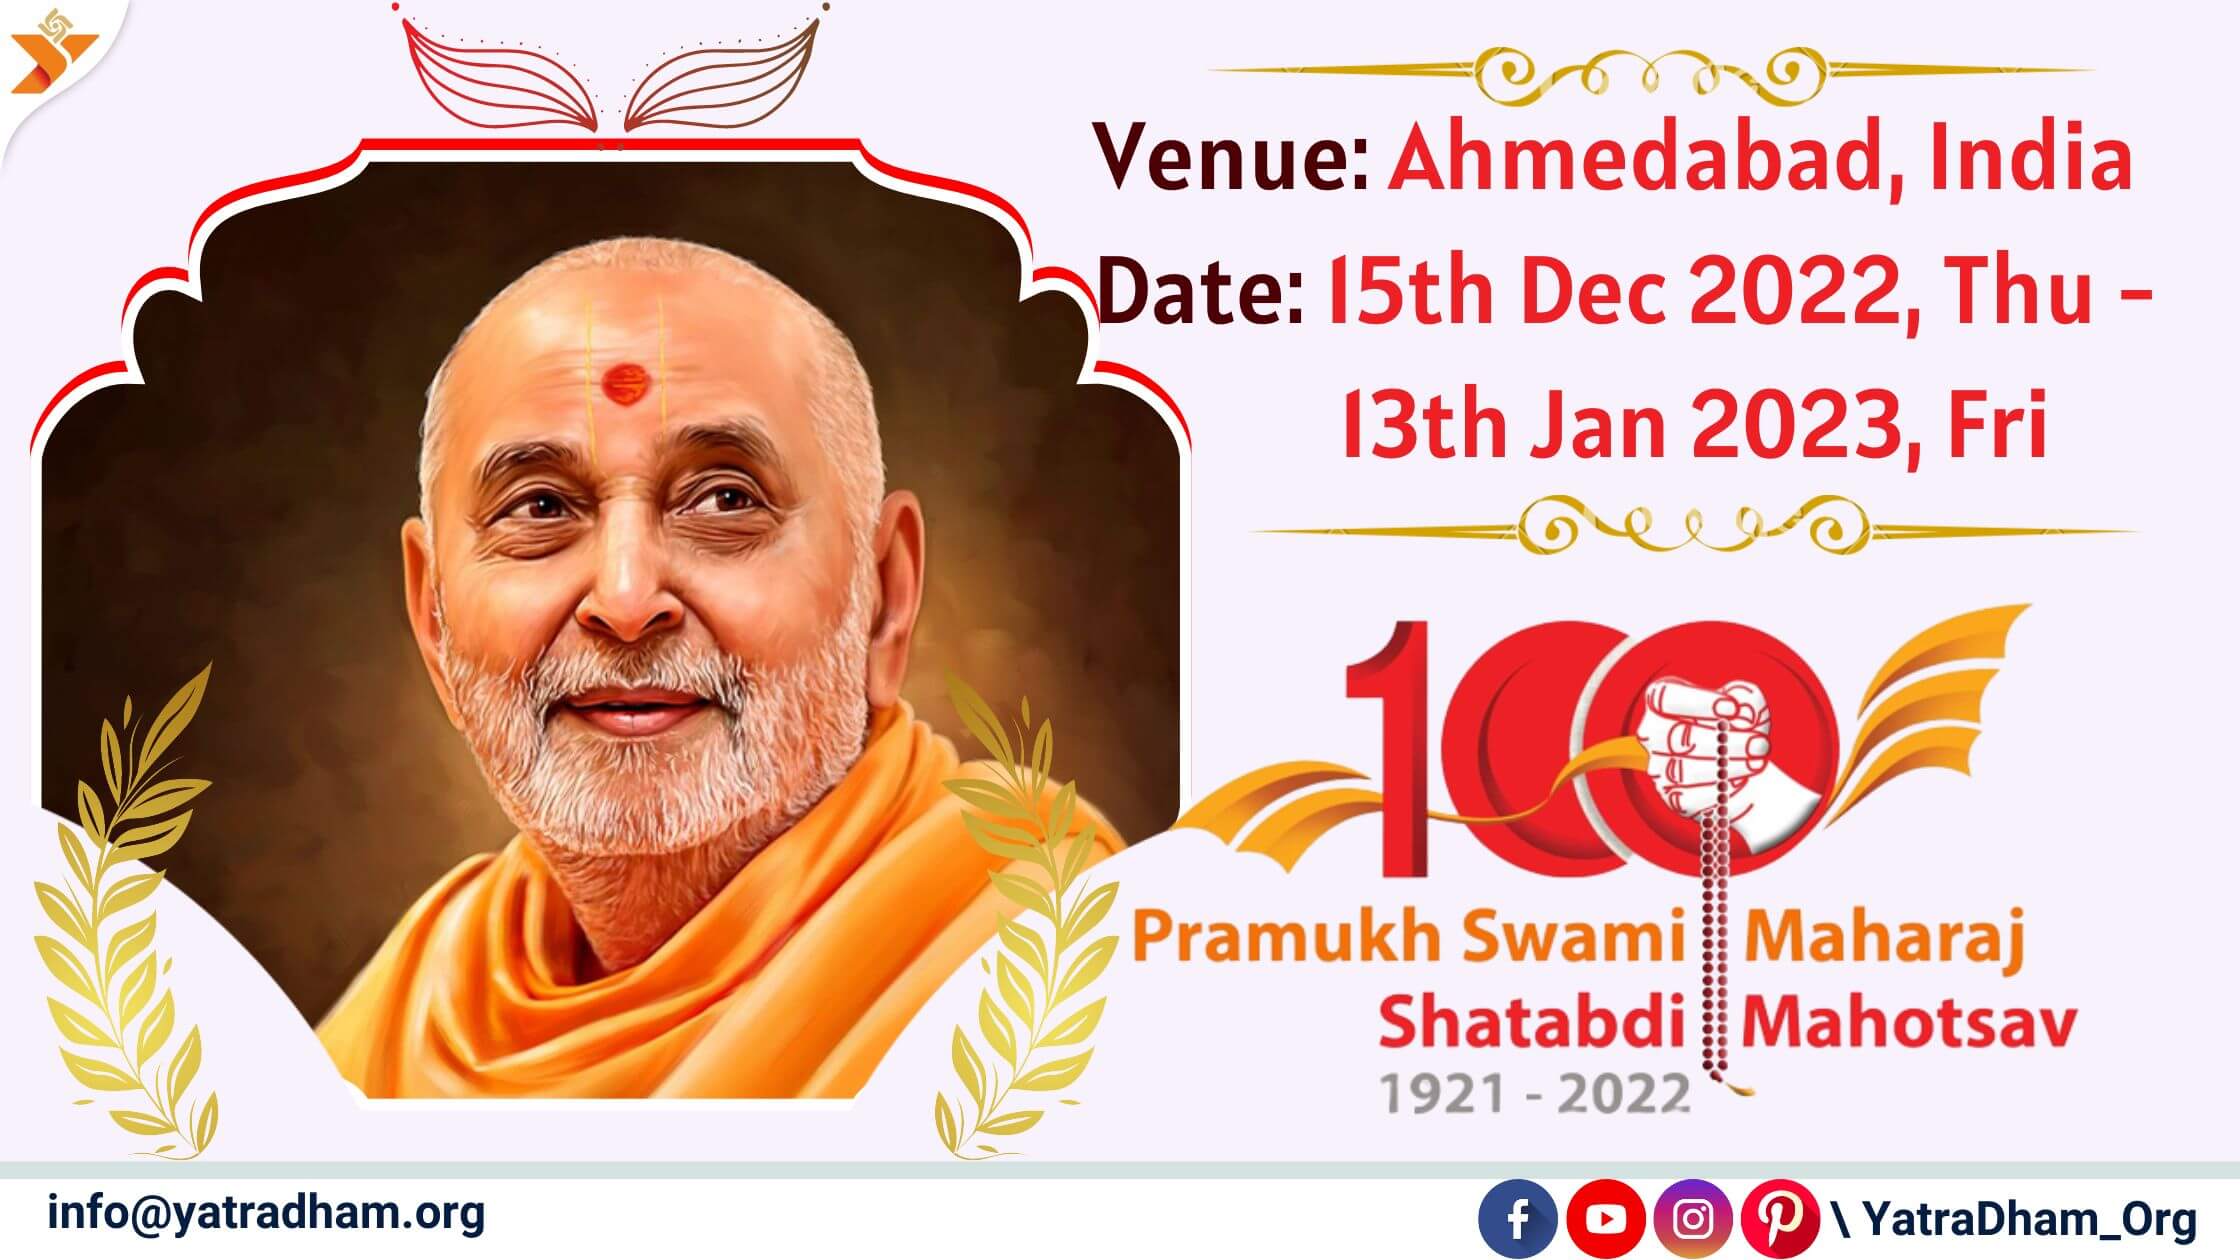 Pramukh Swami Maharaj Shatabdi Mahotsav 2022 place